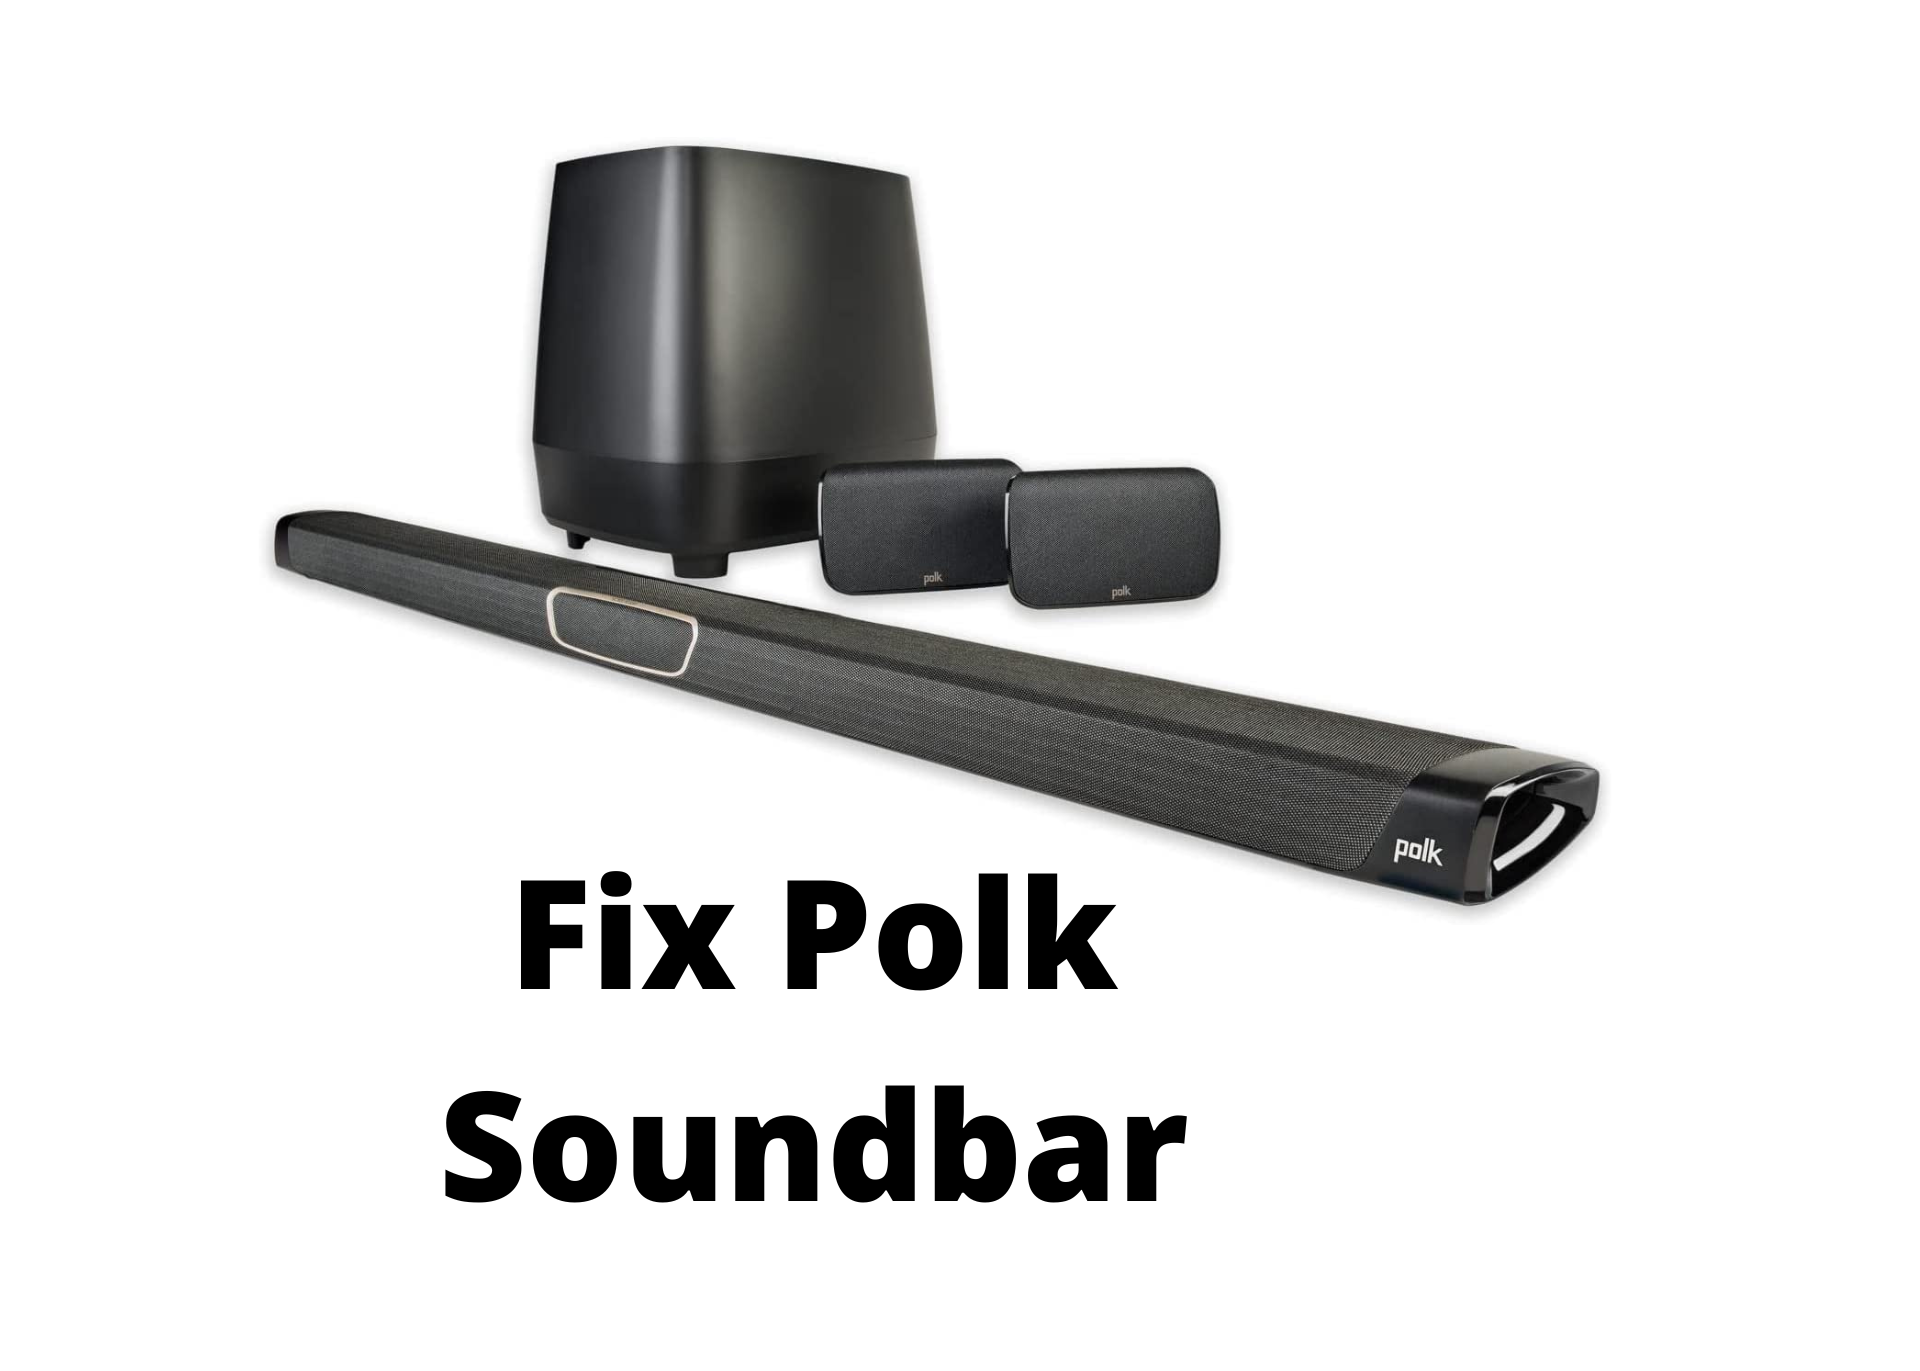 Polks soundbar turning off